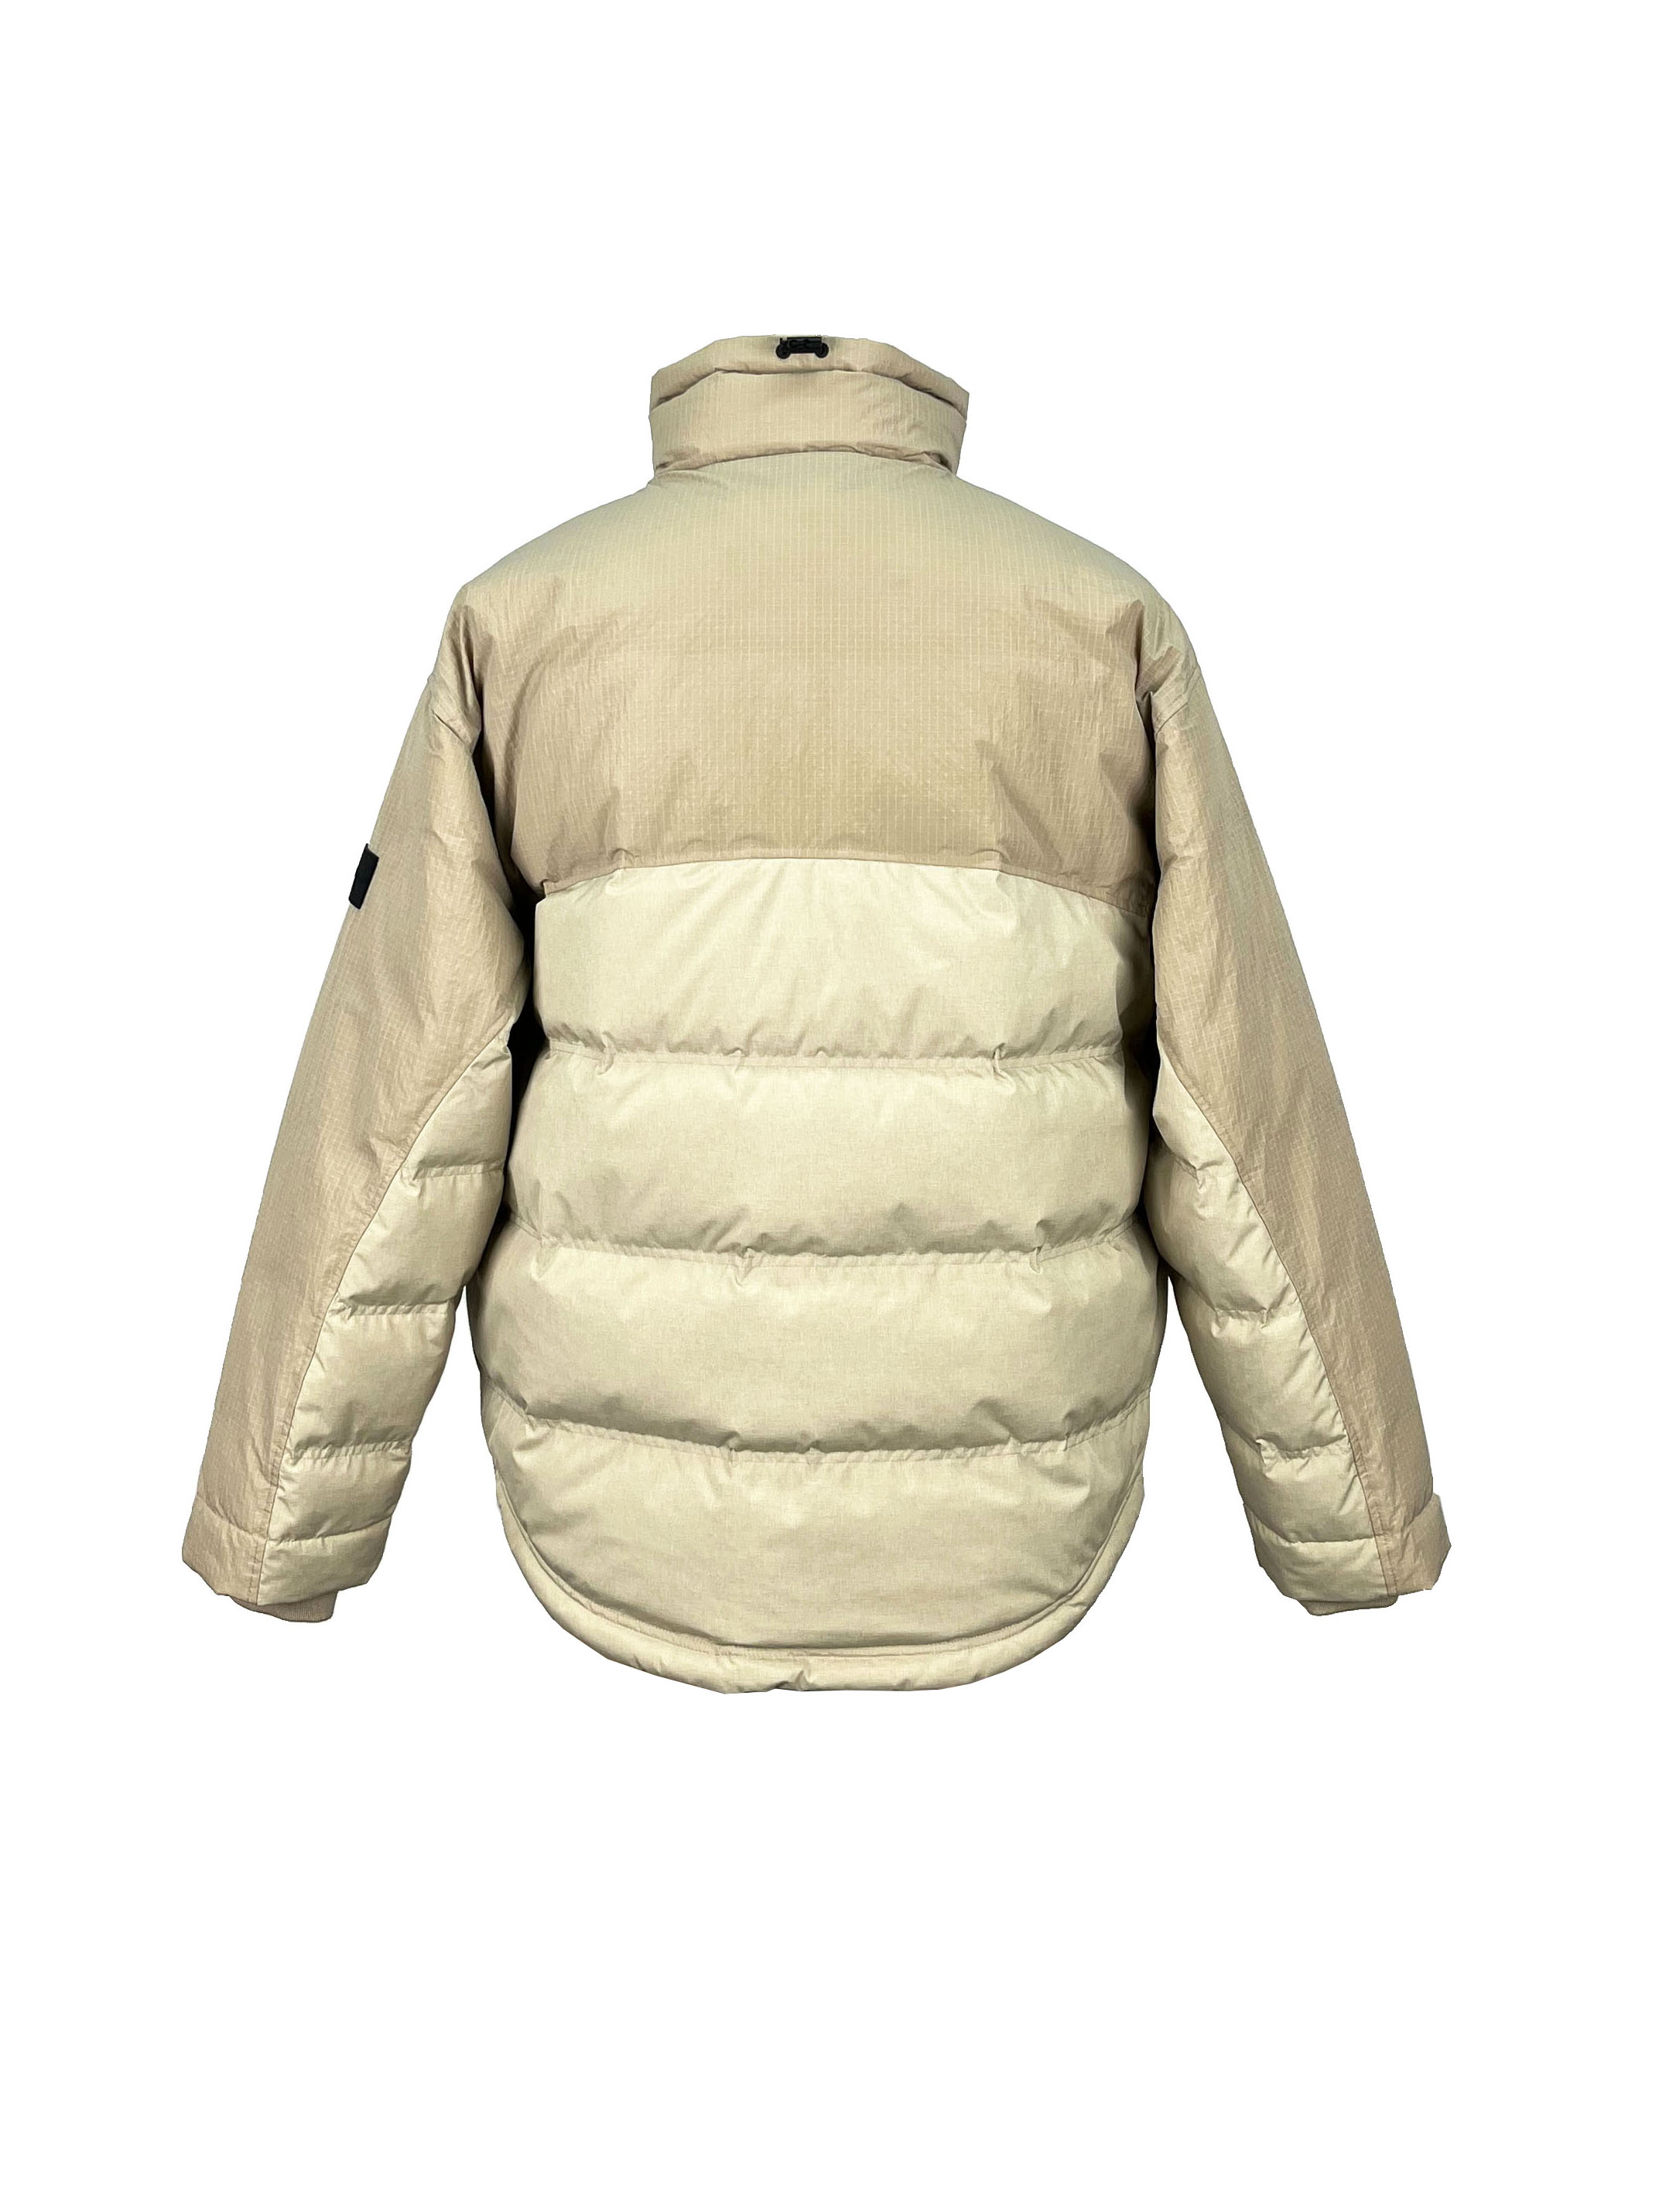 4.padded jacket.(2)